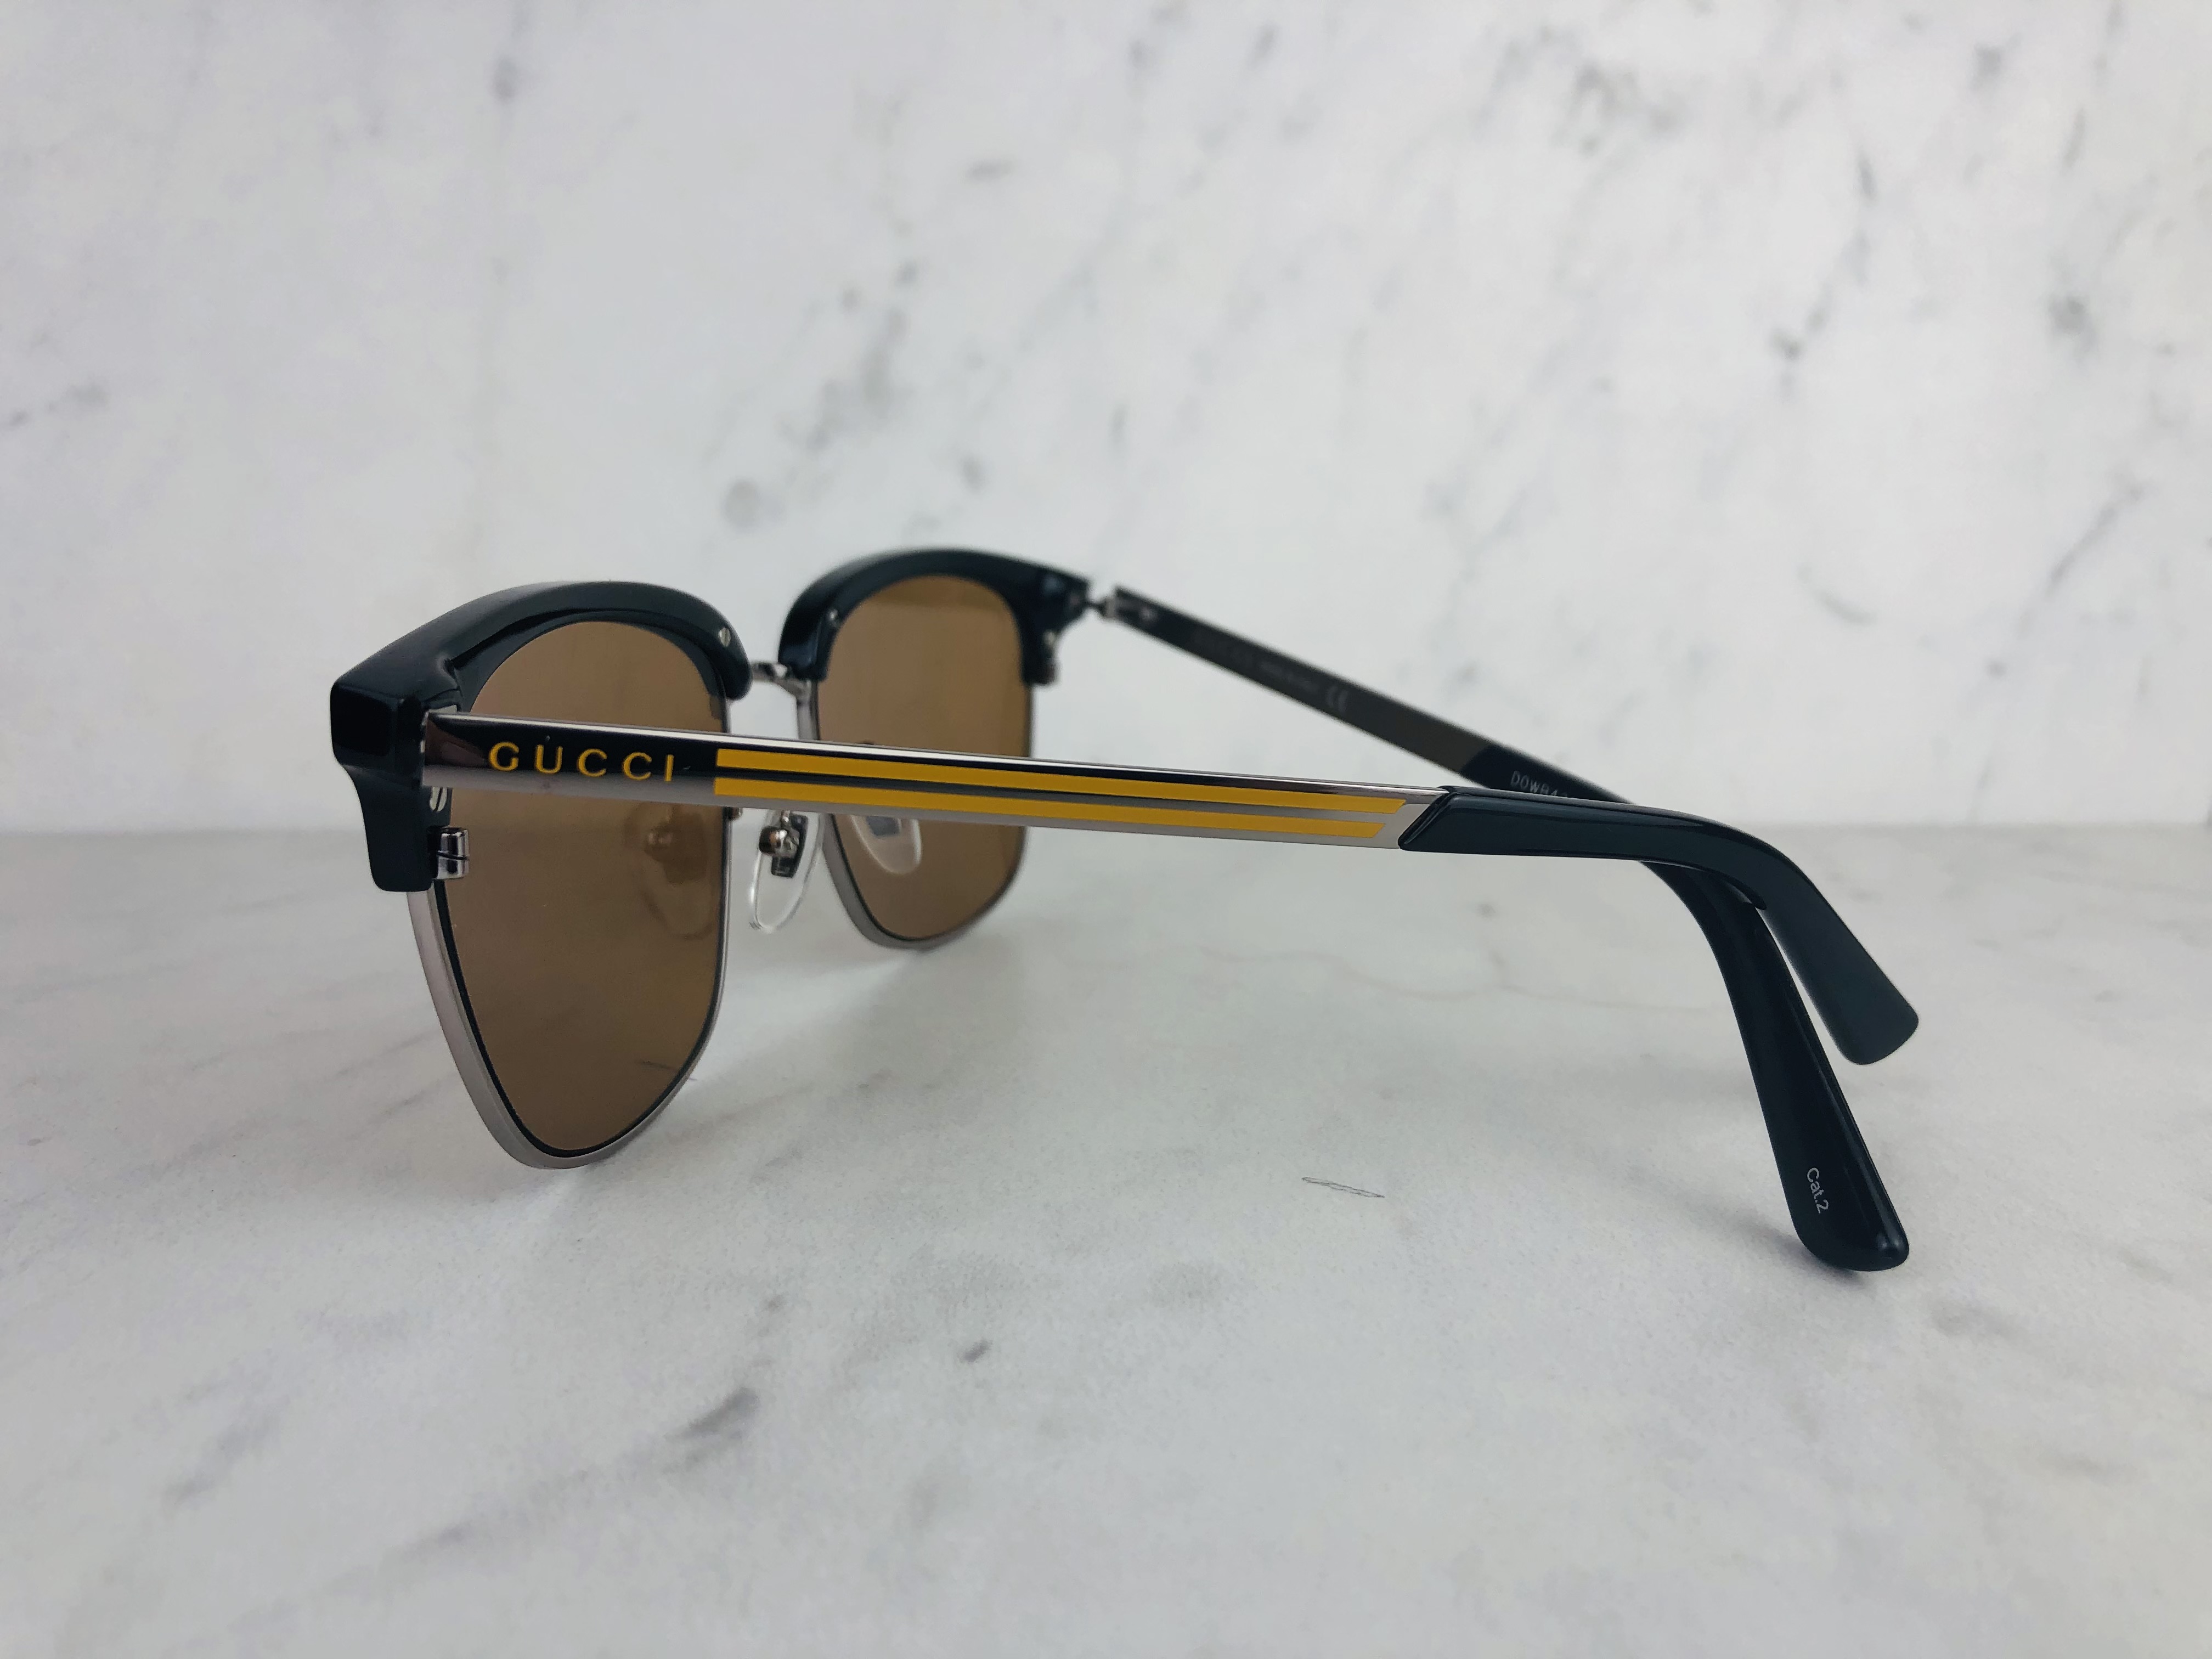 women's sunglasses brand: Gucci, non-rx able